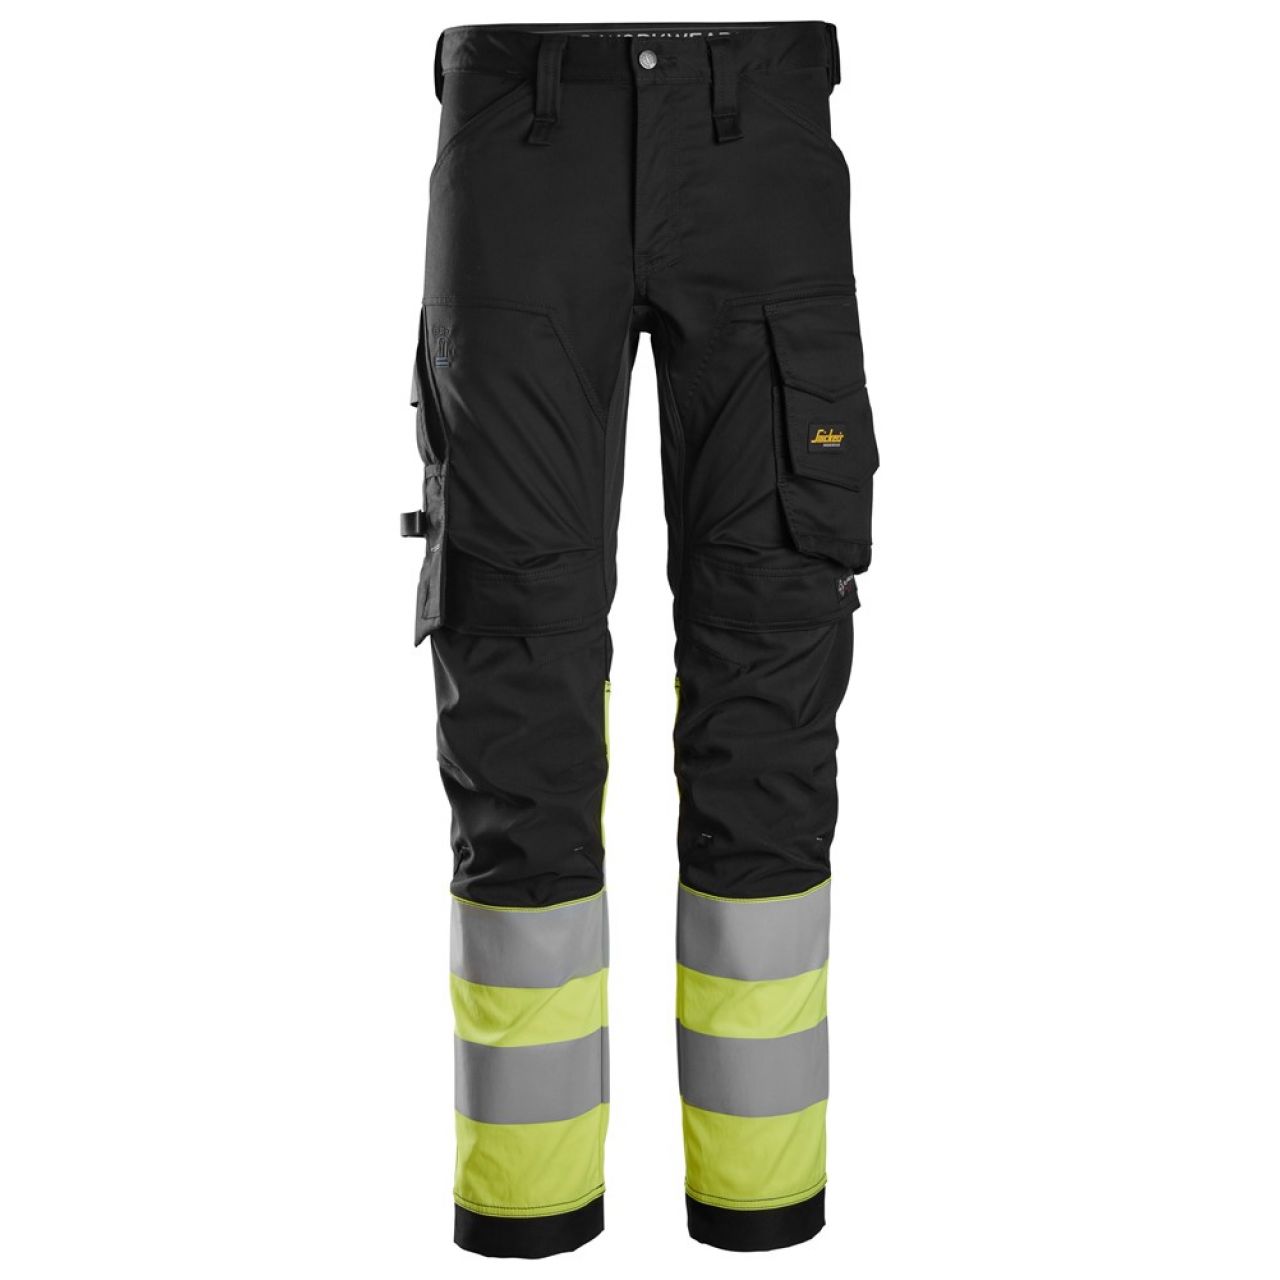 6334 Pantalones largos de trabajo elásticos de alta visibilidad clase 1 negro-amarillo talla 256